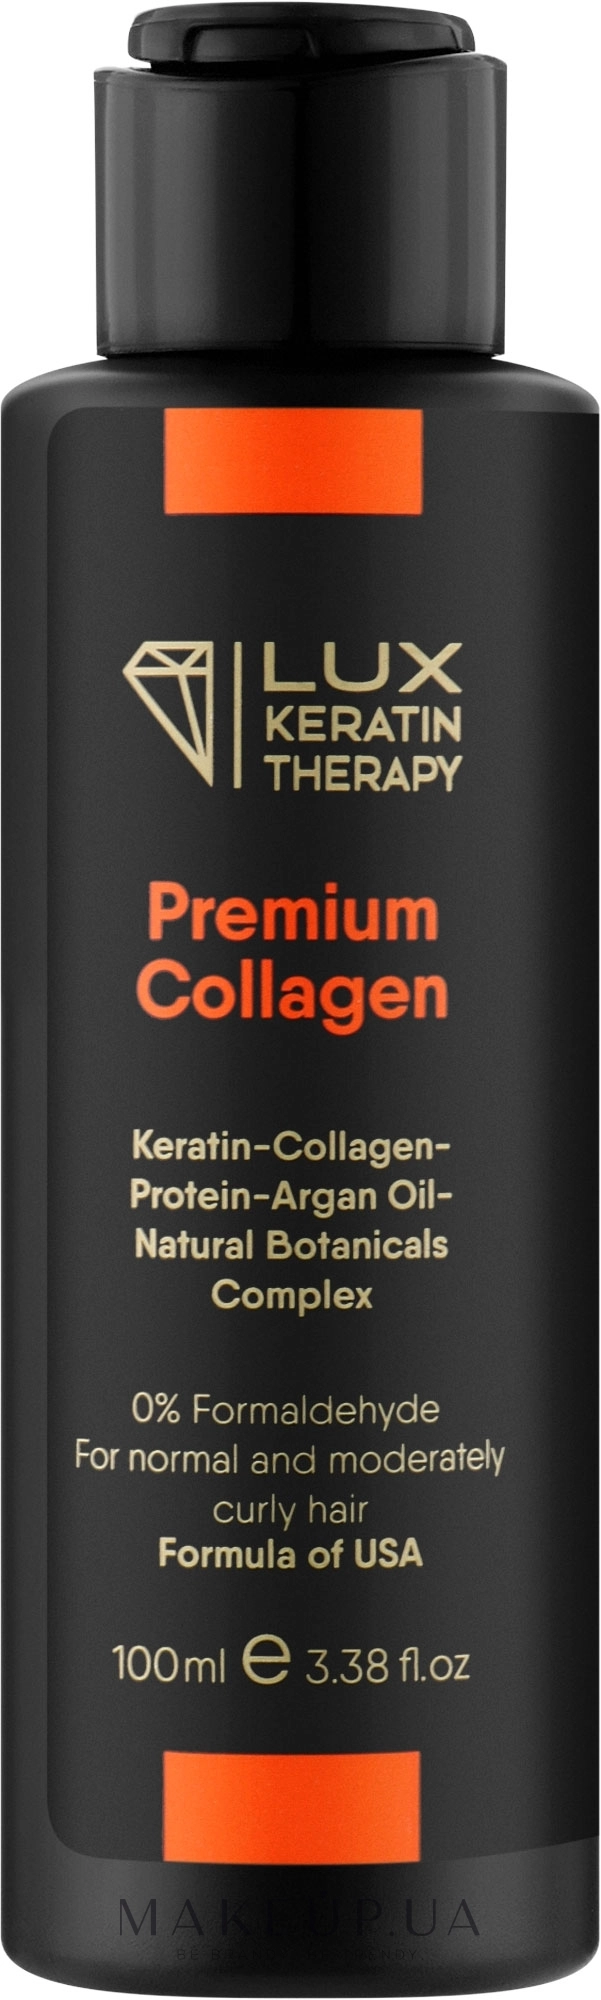 Засіб для випрямлення волосся - Lux Keratin Therapy Premium Collagen, 100 мл - фото N1